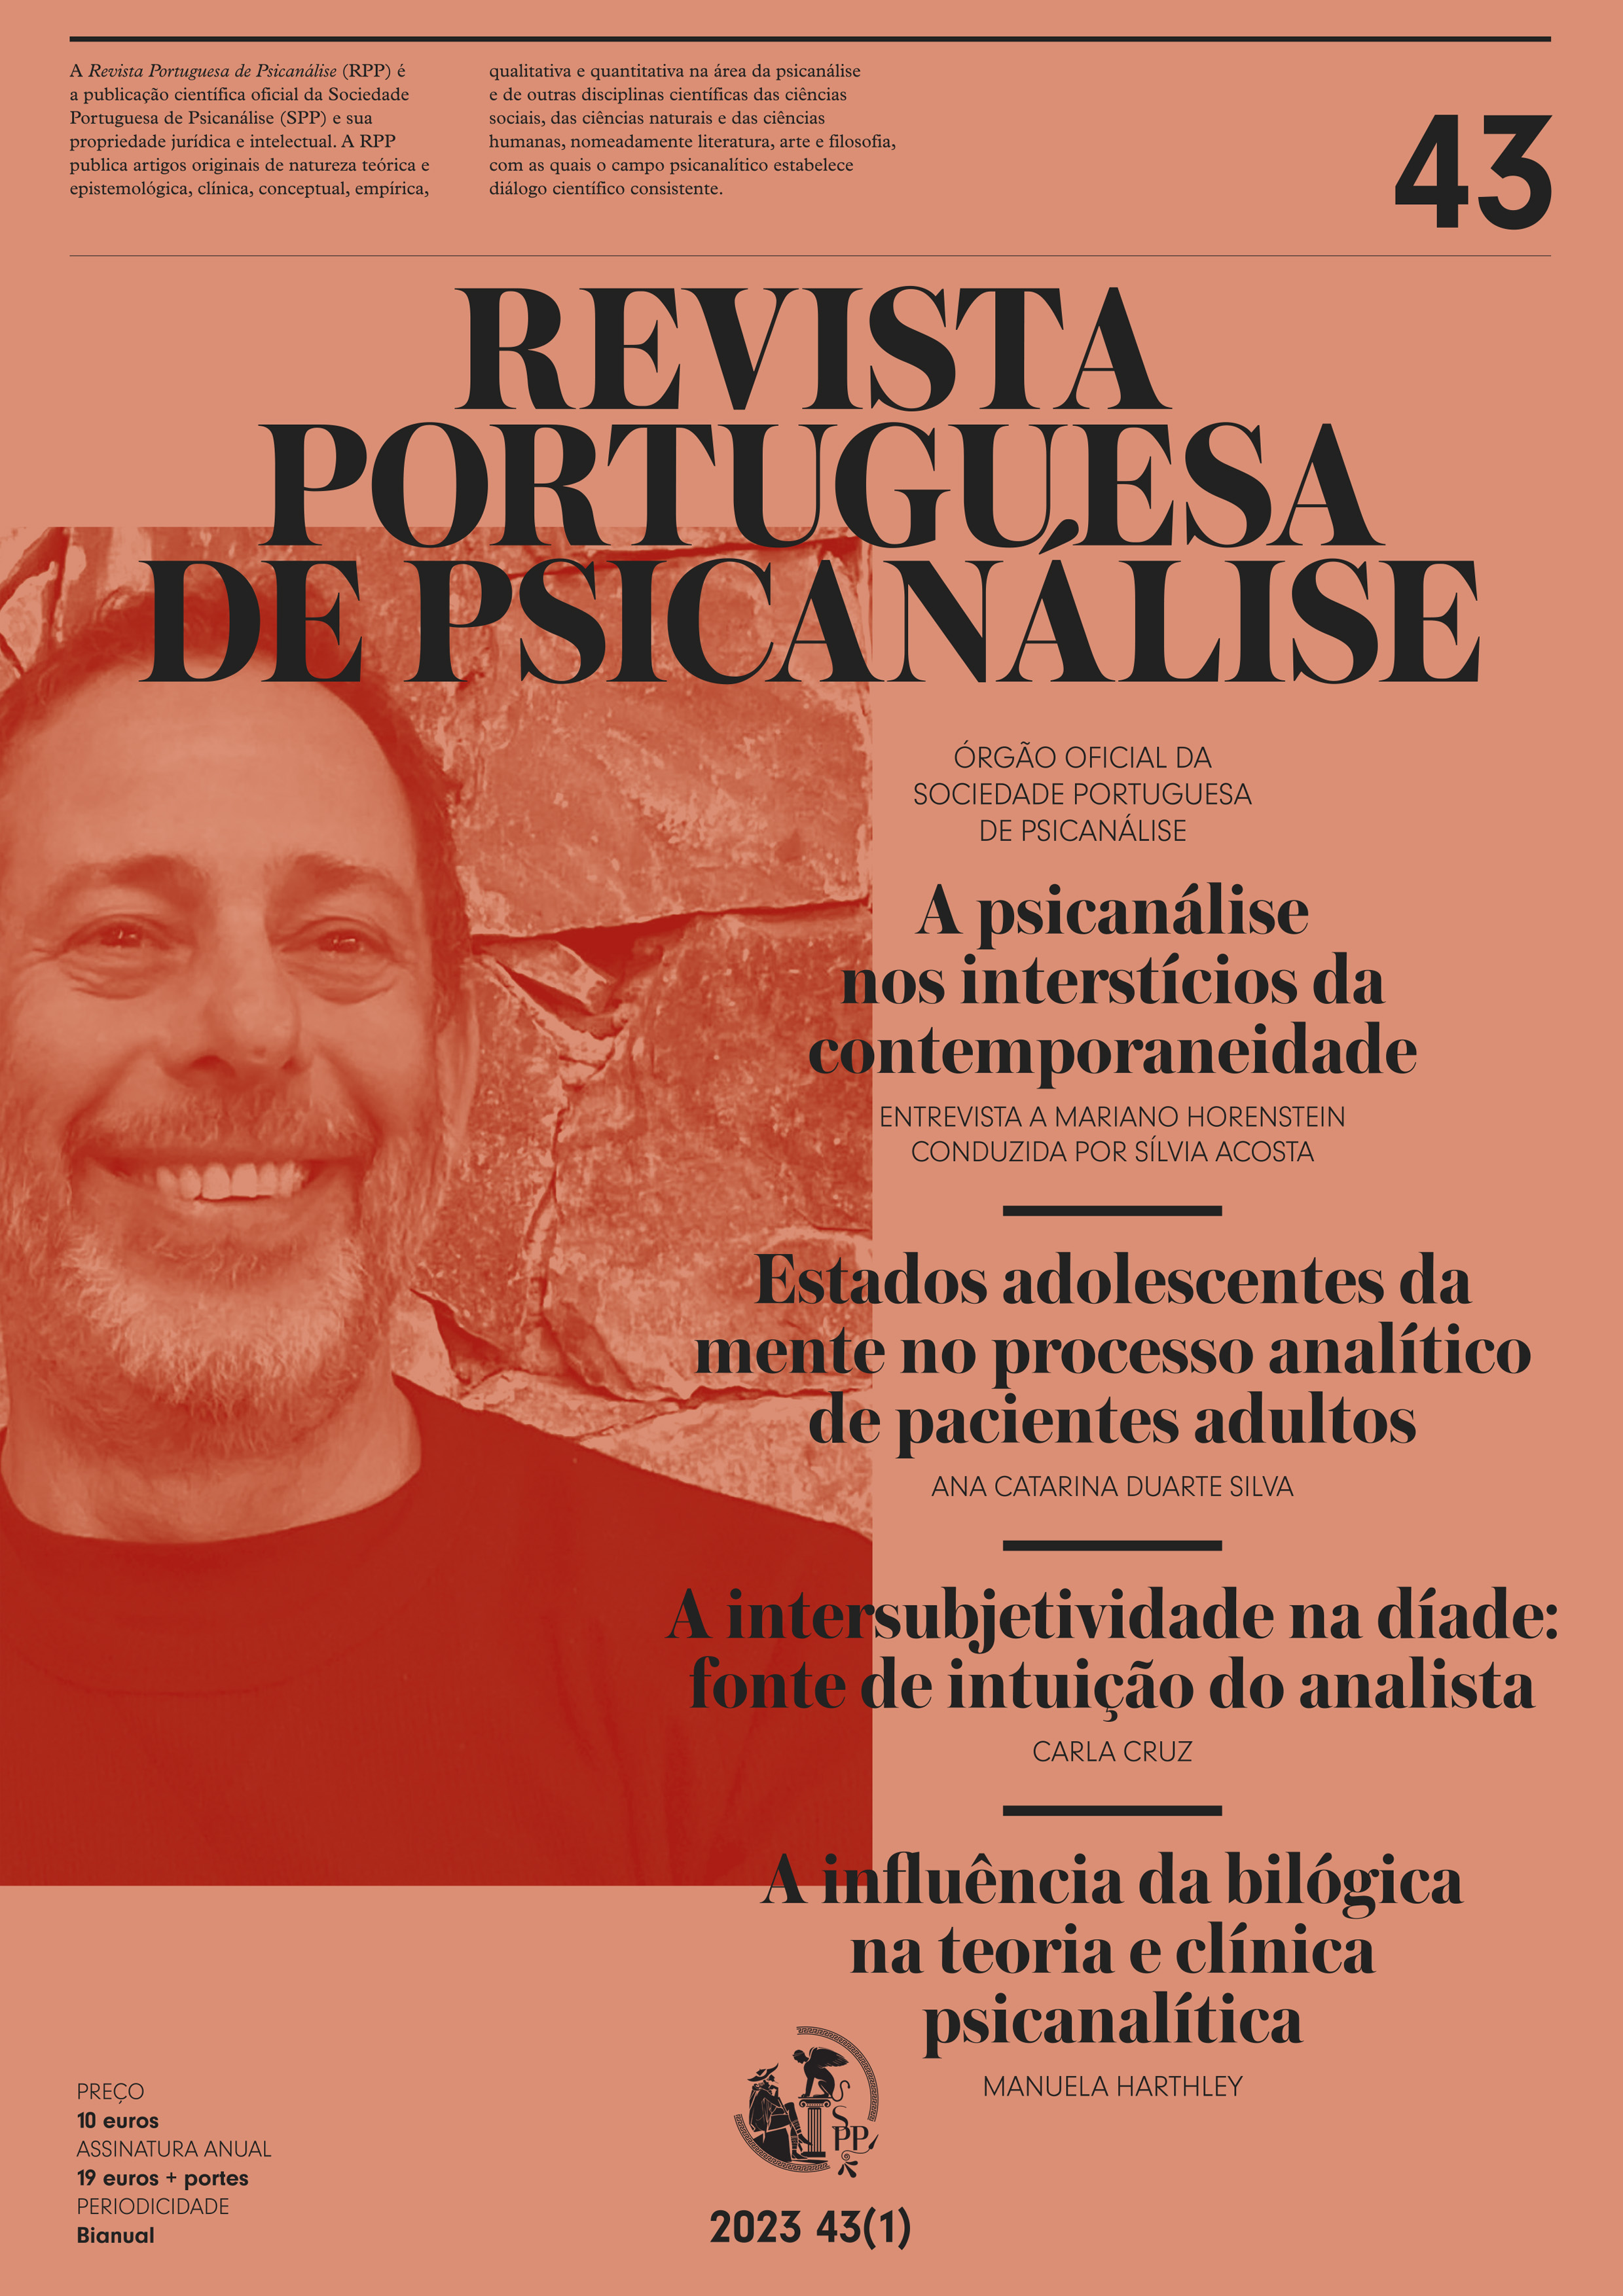 Vol. 39 N.º 2 (2019): Revista Portuguesa de Psicanálise